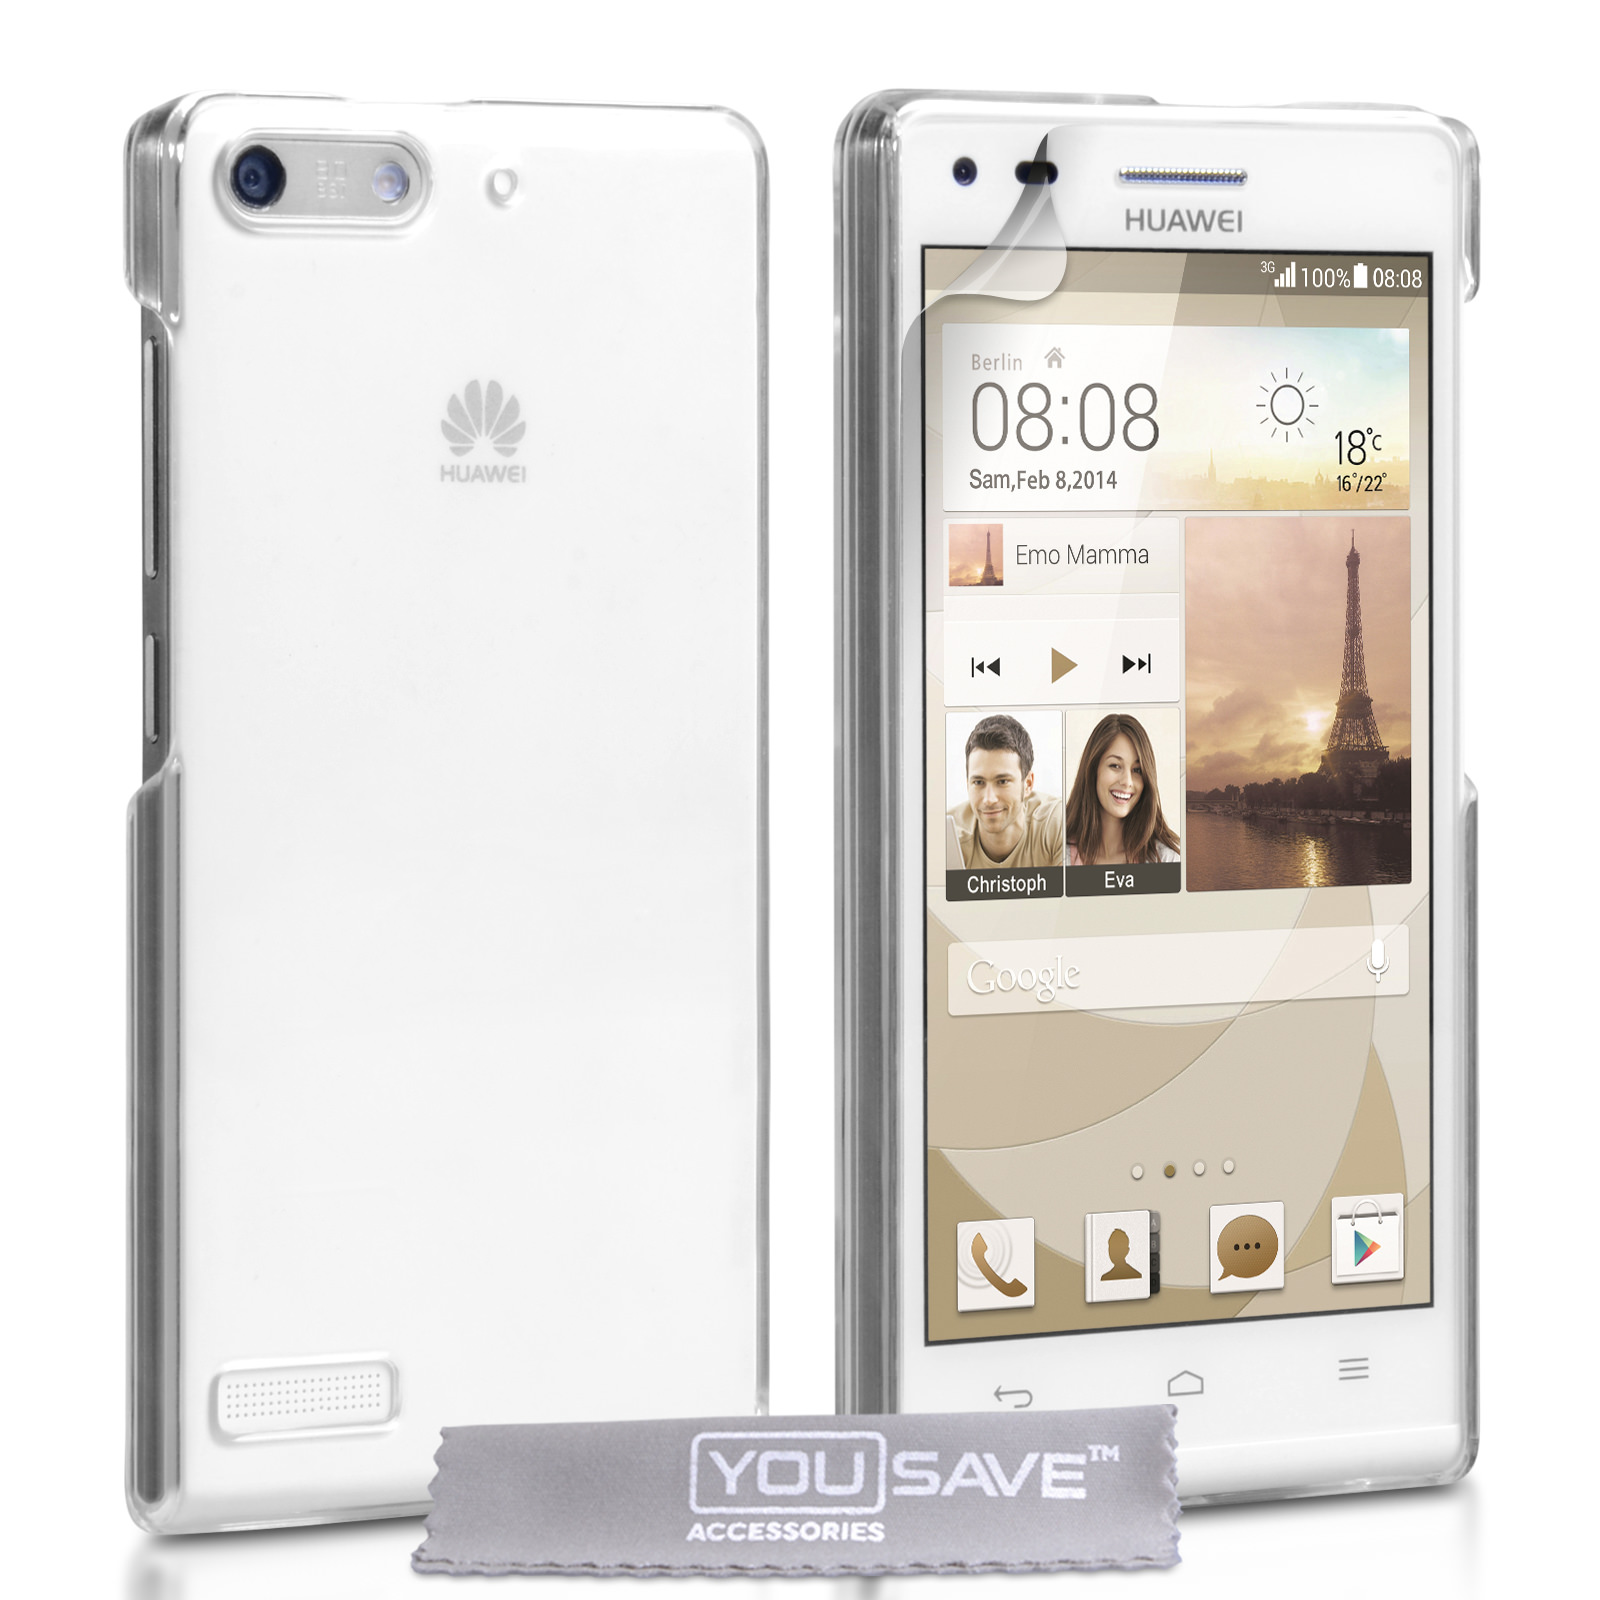 buitenste Flikkeren grind YouSave Accessories Huawei Ascend G6 Hard Case - Crystal Clear